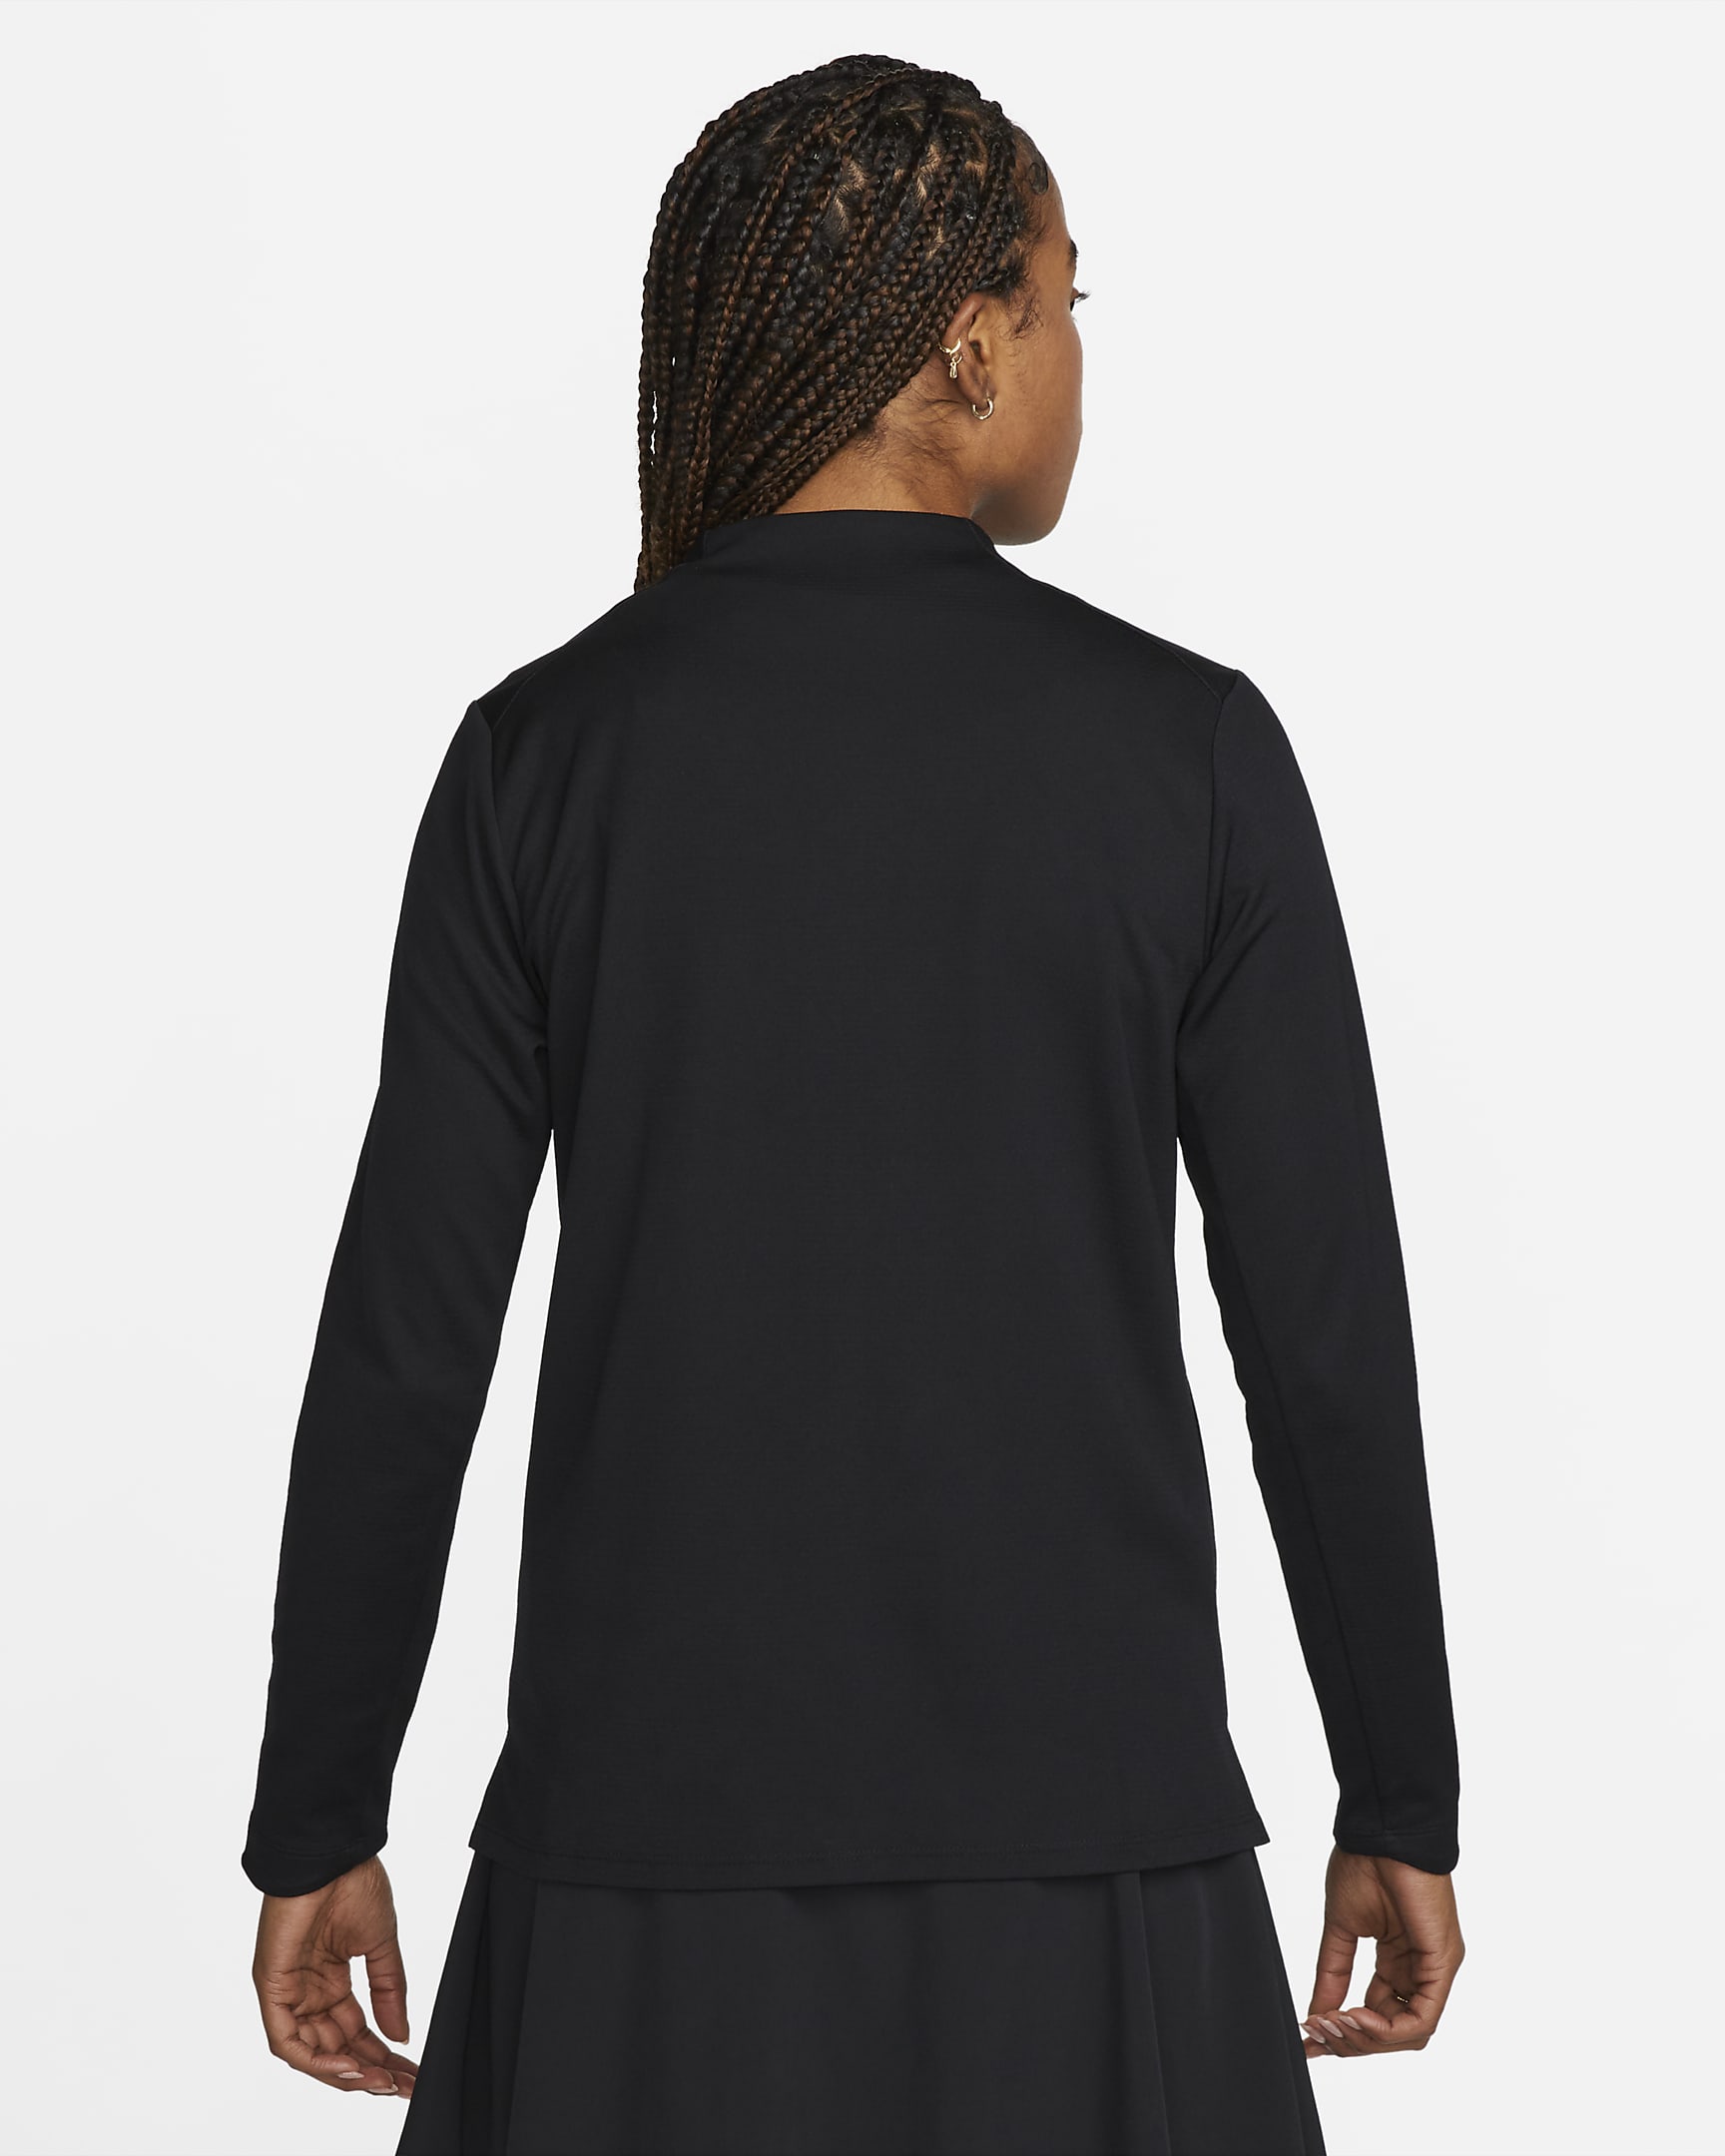 Nike Dri-FIT UV Advantage Women's Full-Zip Top. Nike IL